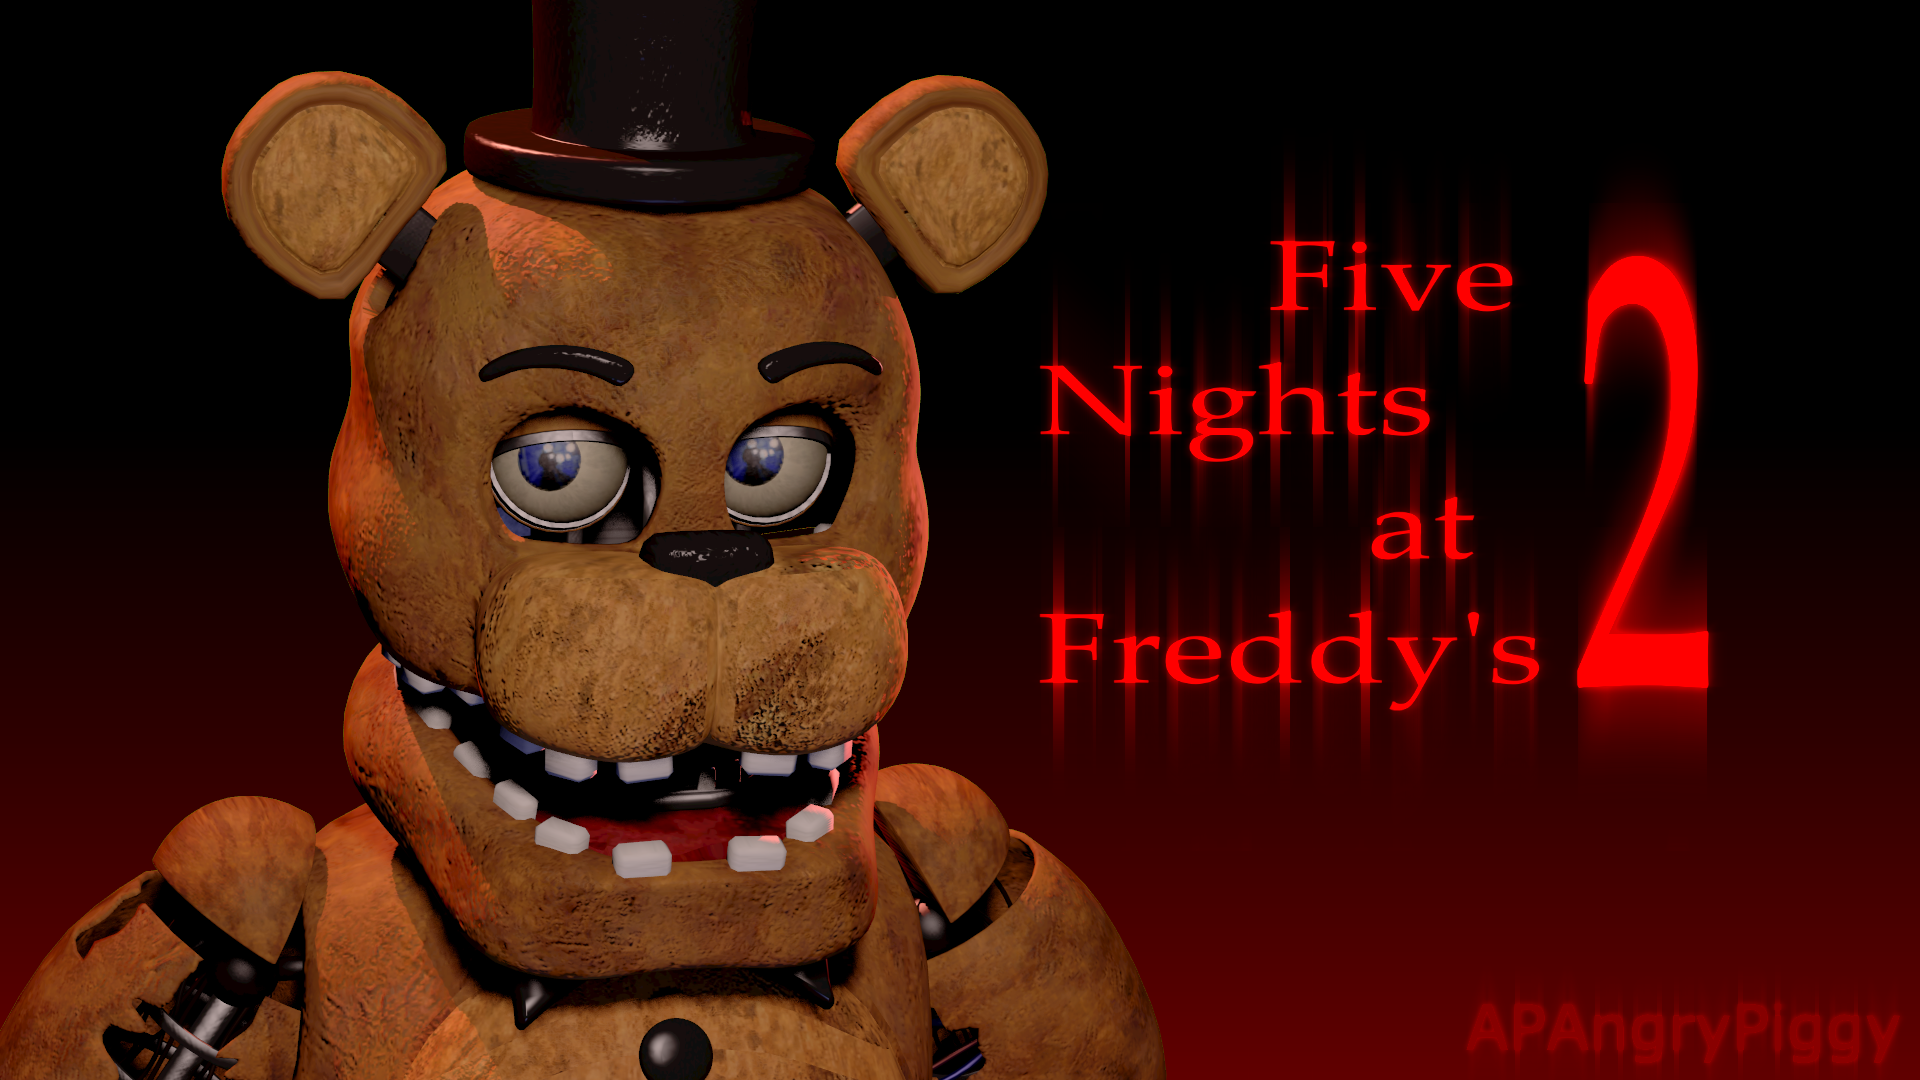 Freddy's играть. Five Nights at Freddy's 2 Фредди. Файв Найтс АТ Фредди. Фредди ФНАФ 1 И 2. Фиве Нигхт АТ Фредди с 3.